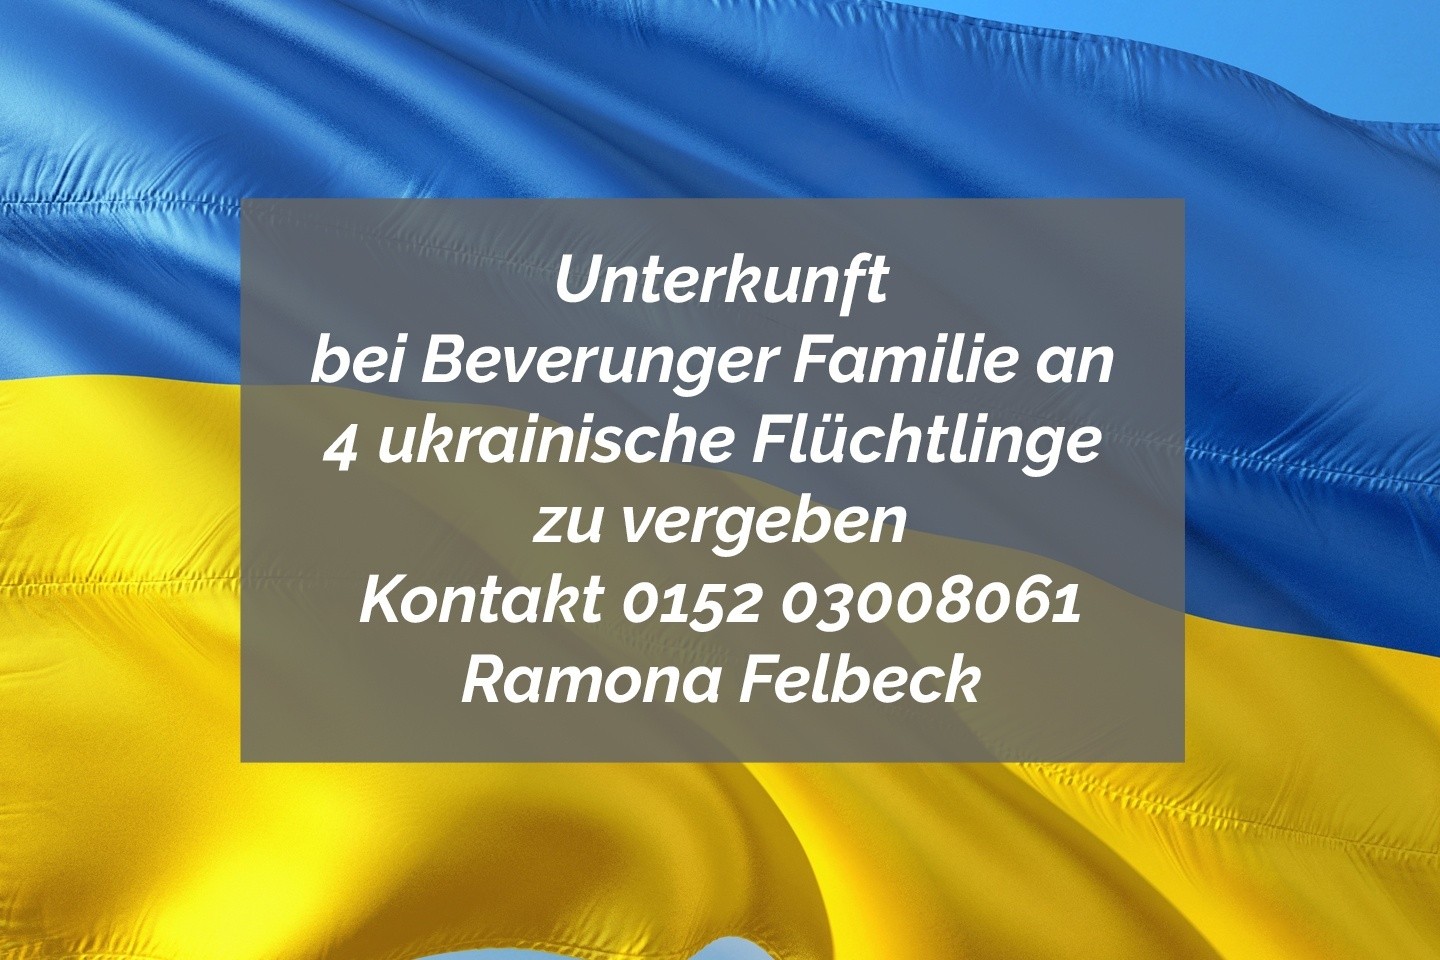 Unterkunft bei Beverunger Familie für 4 ukrainische Flüchtlinge zu vergeben